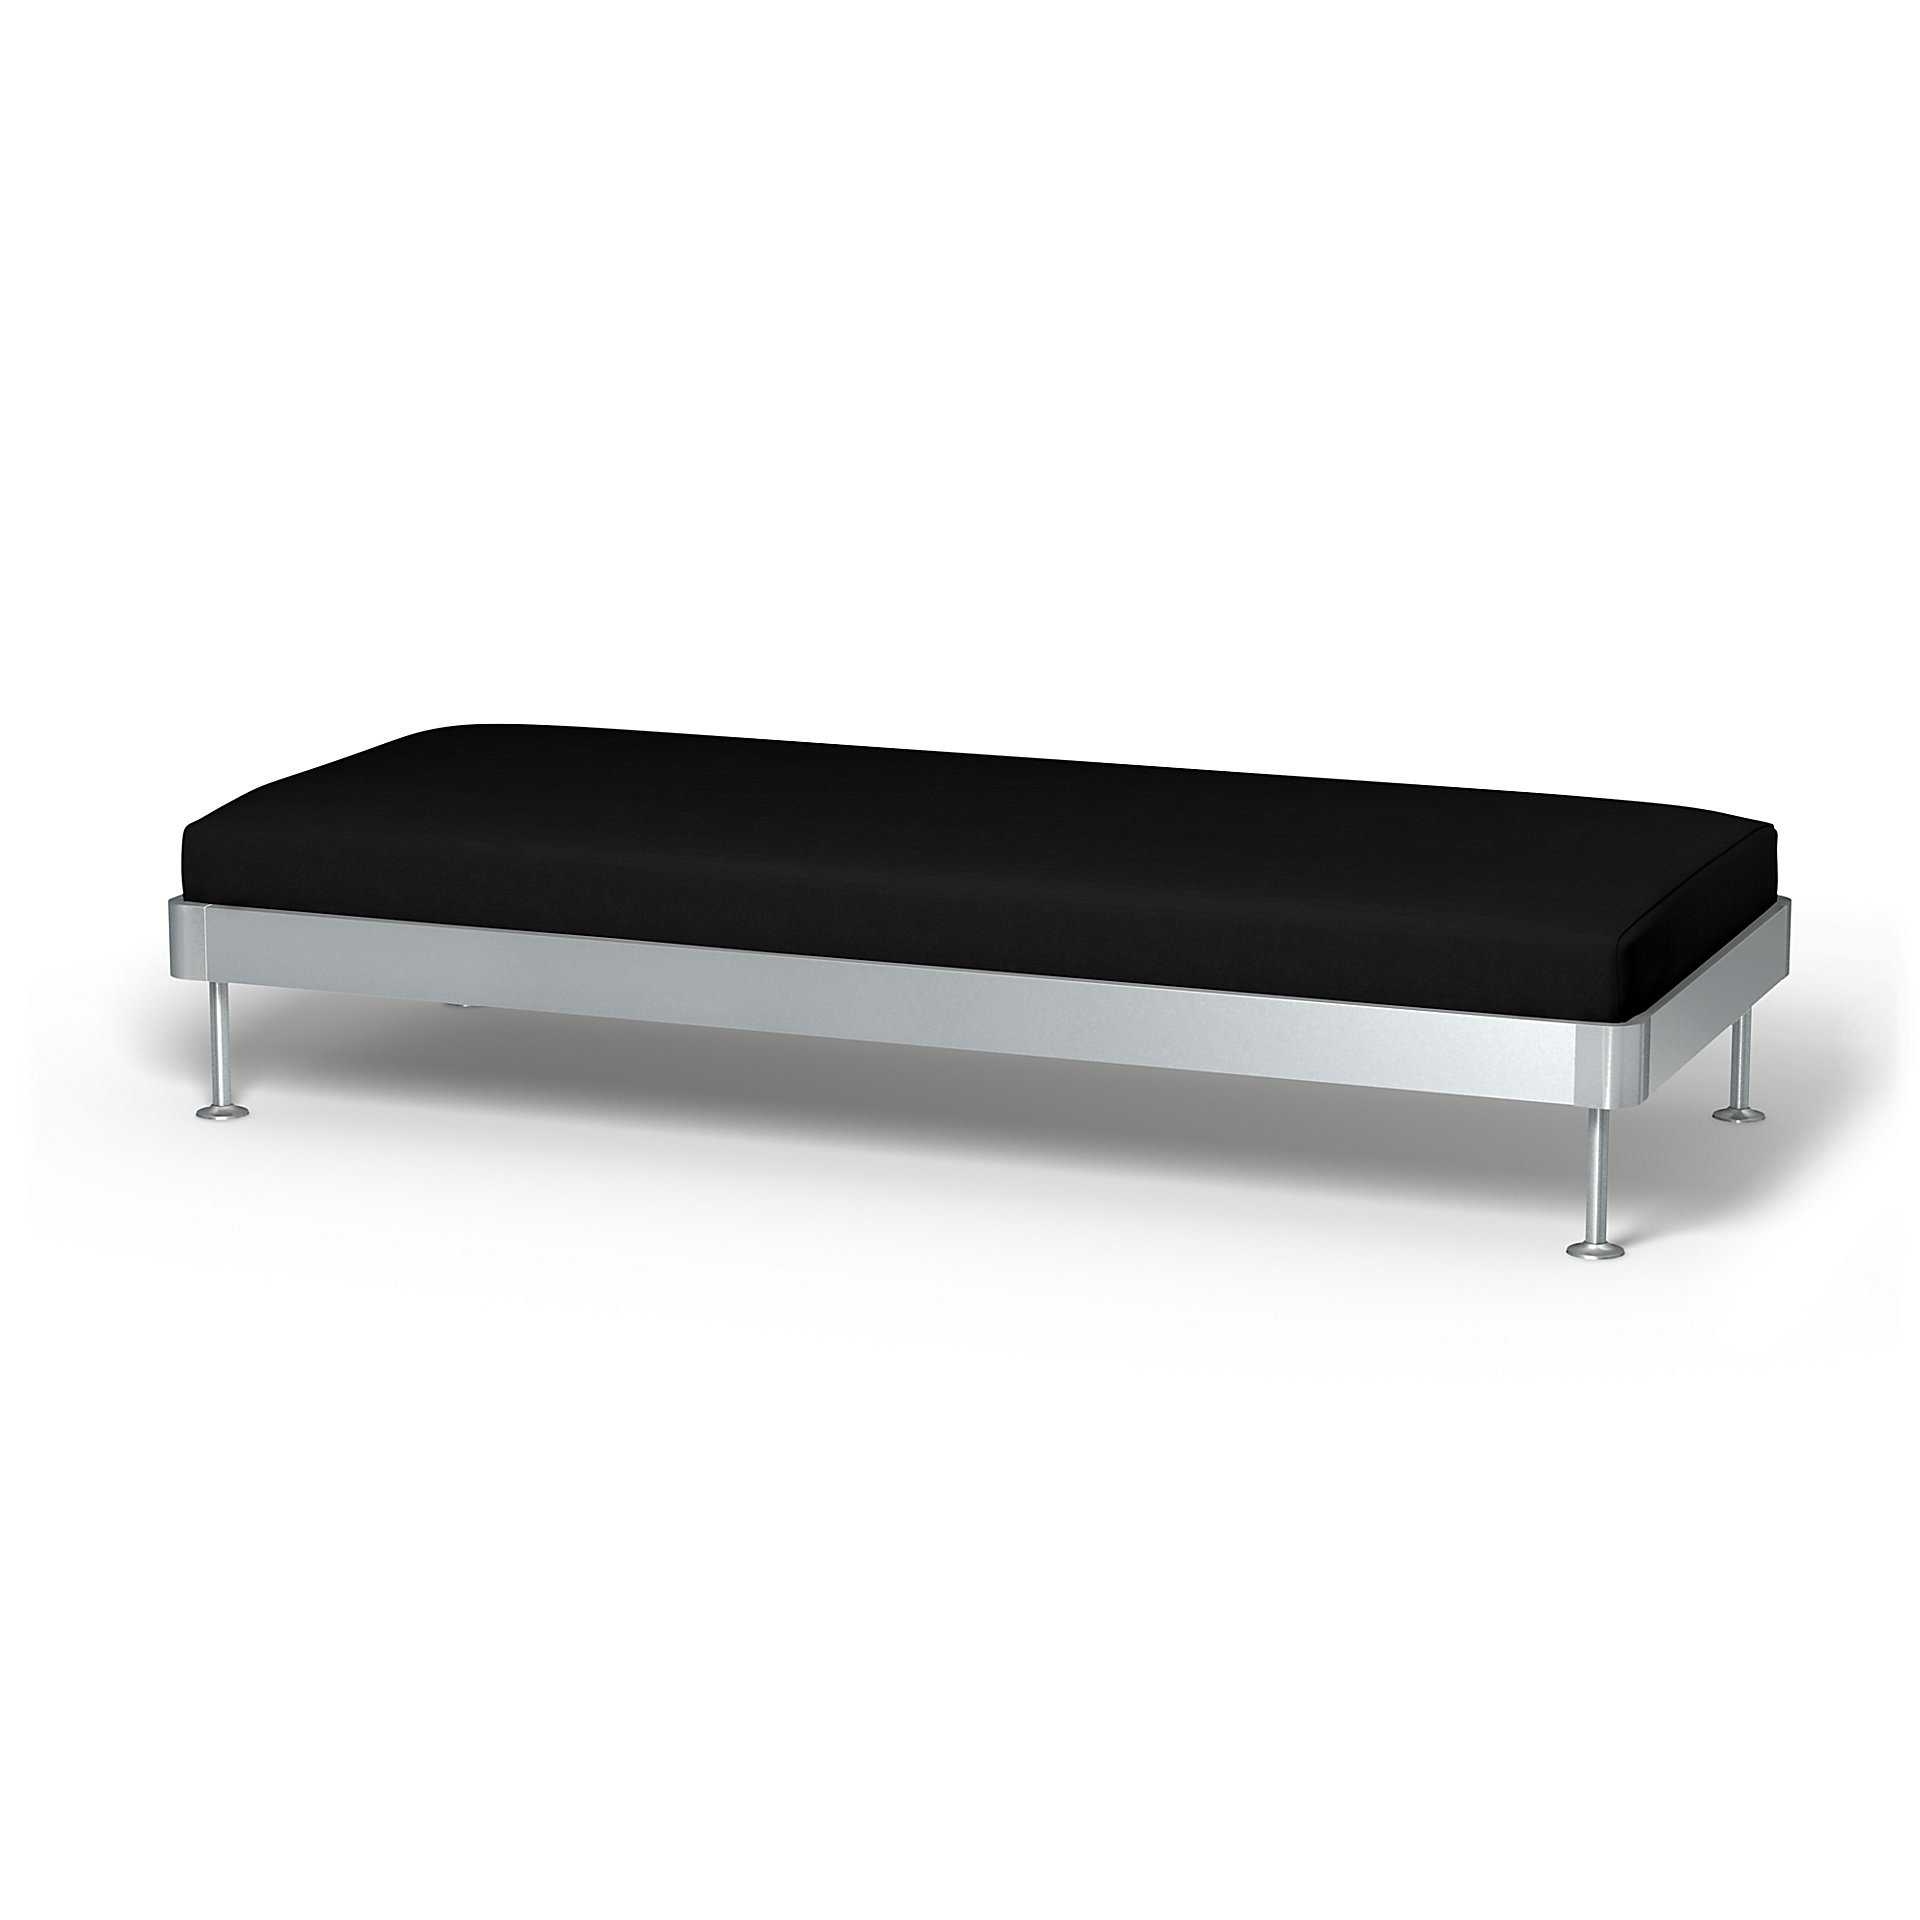 IKEA - Delaktig 3 Seat Platform Cover, Black, Velvet - Bemz